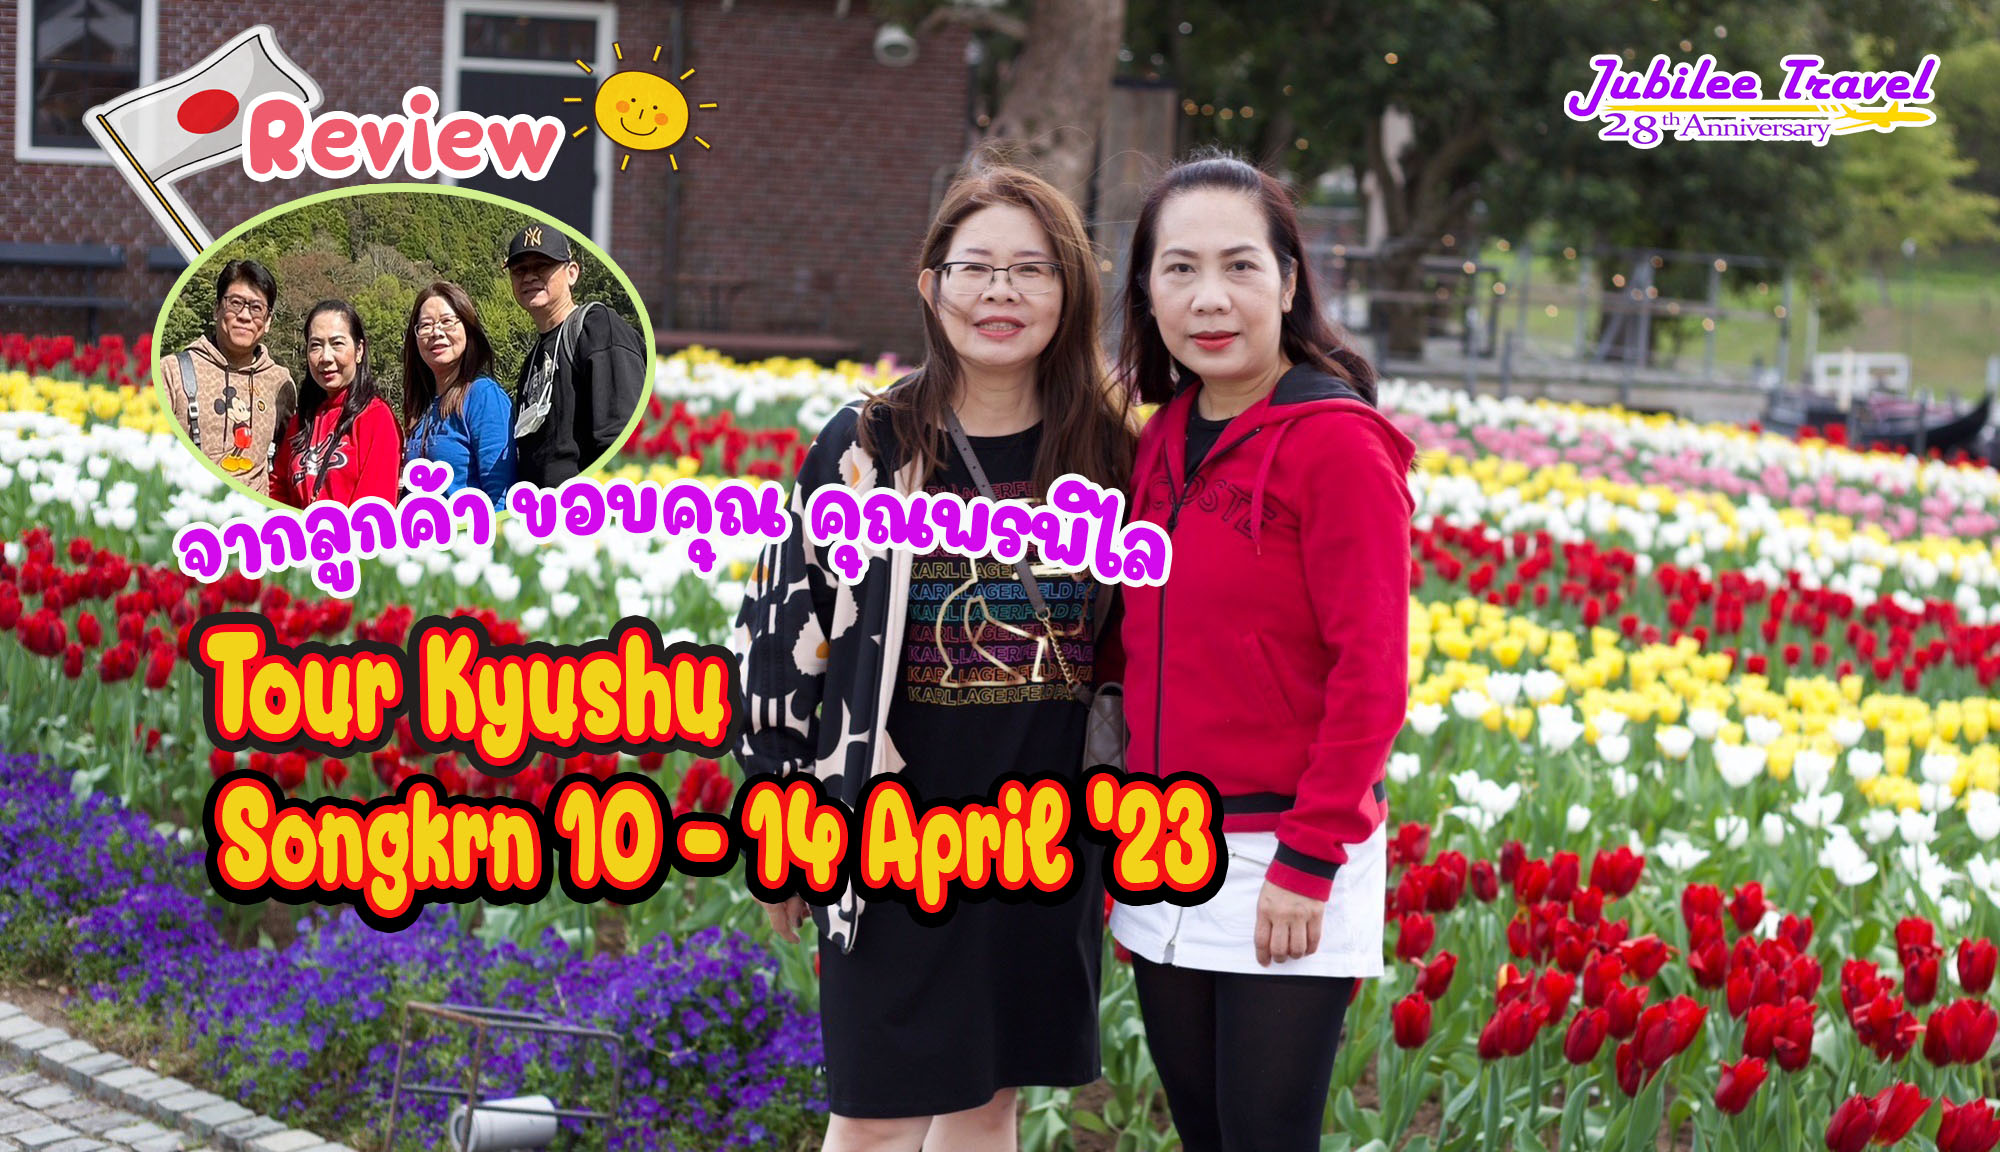 รีวิว ขอบคุณคุณลูกค้า Tour Kyushu Songkran 10-14 April’23 คุณพรพิไล